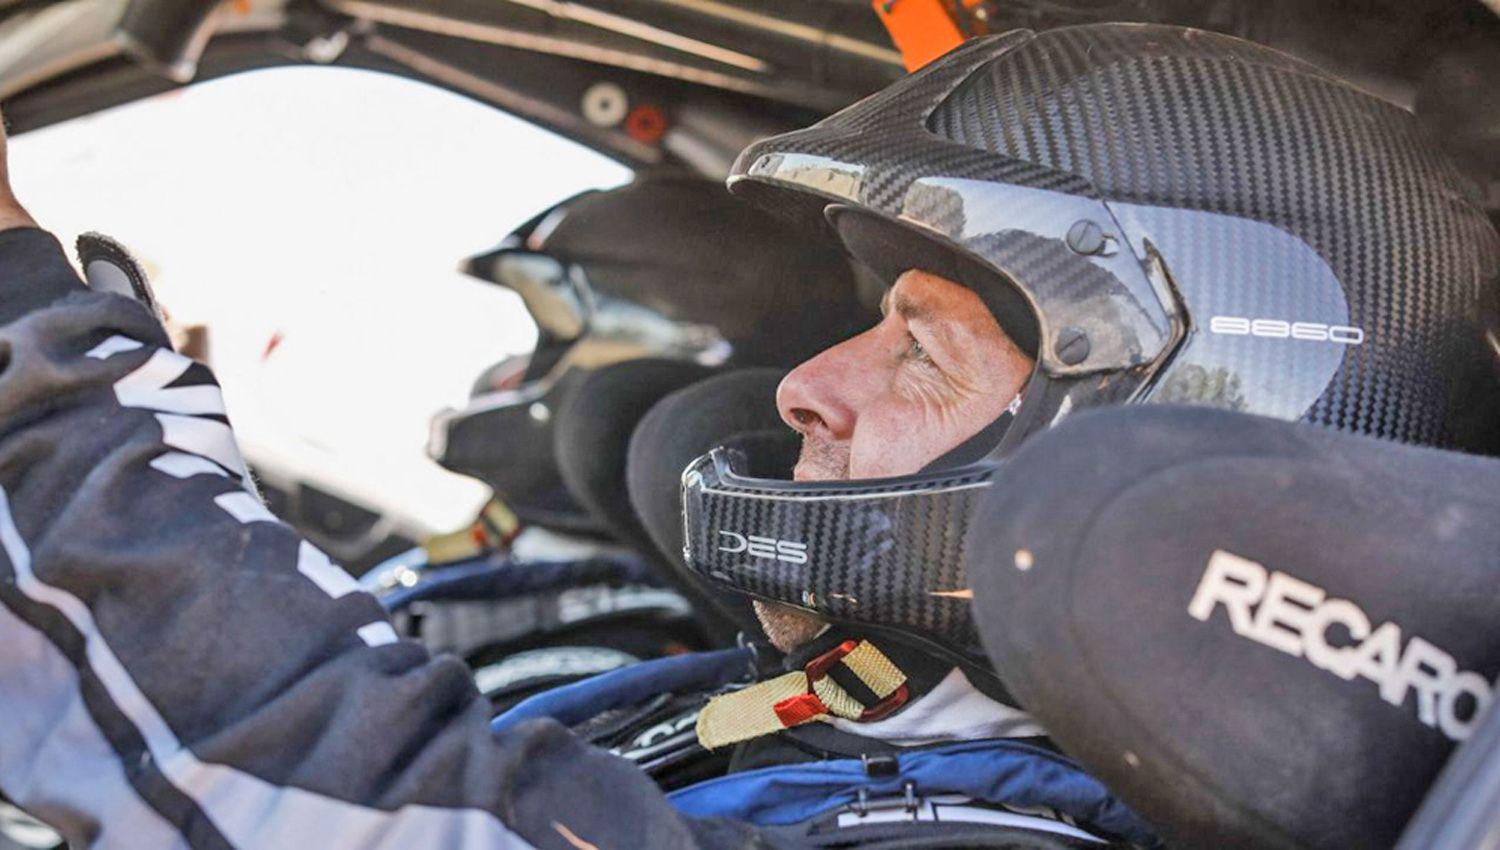 Se larga hoy la edicioacuten 43 del Dakar en Arabia con varios pilotos argentinos